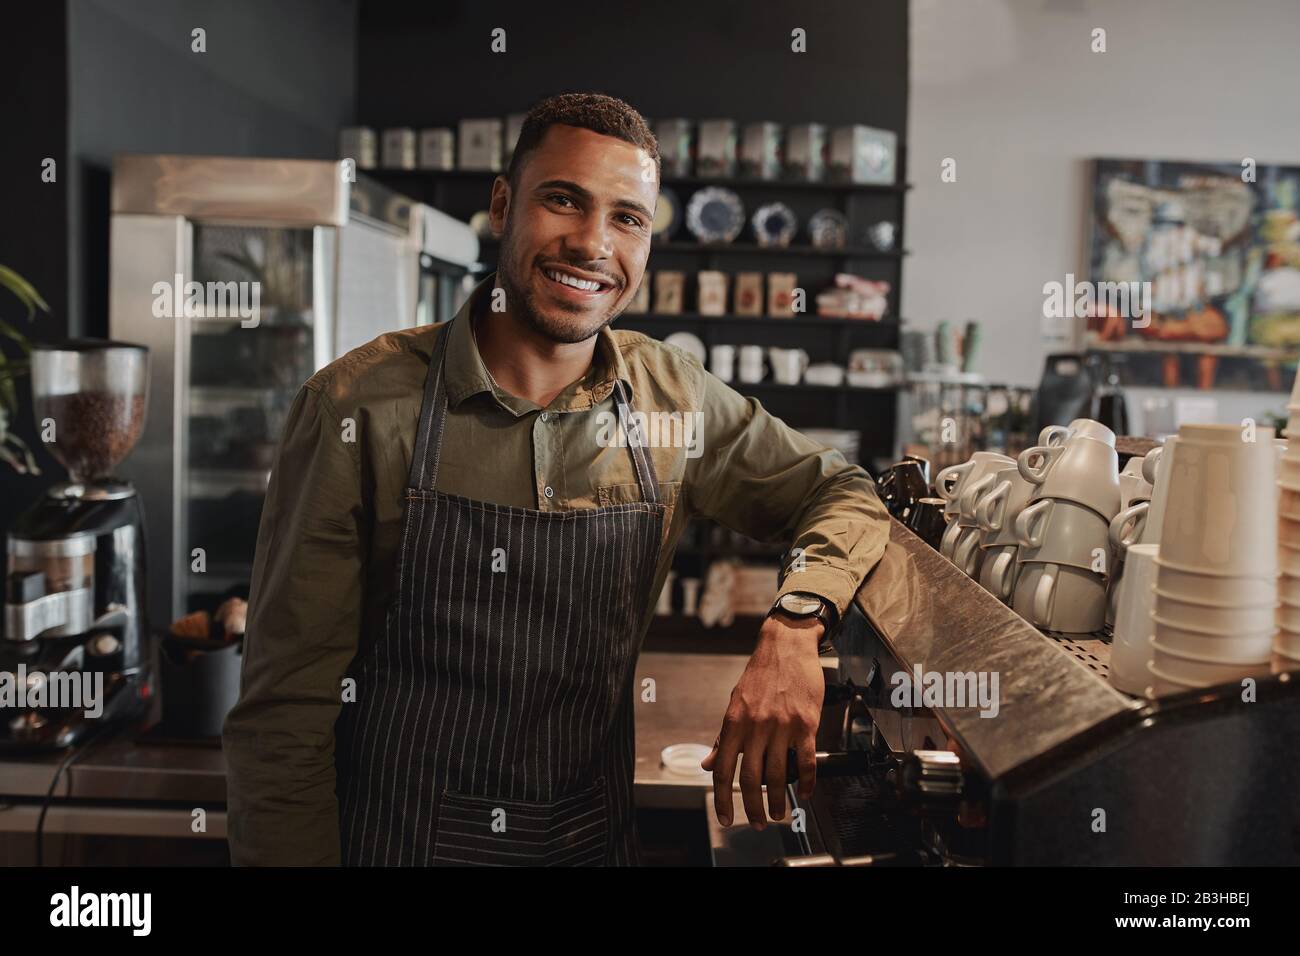 Portrait des jungen afro-amerikanischen männlichen Geschäftsinhabers hinter dem Ladentisch, lächelnd mit Blick auf die Kamera Stockfoto